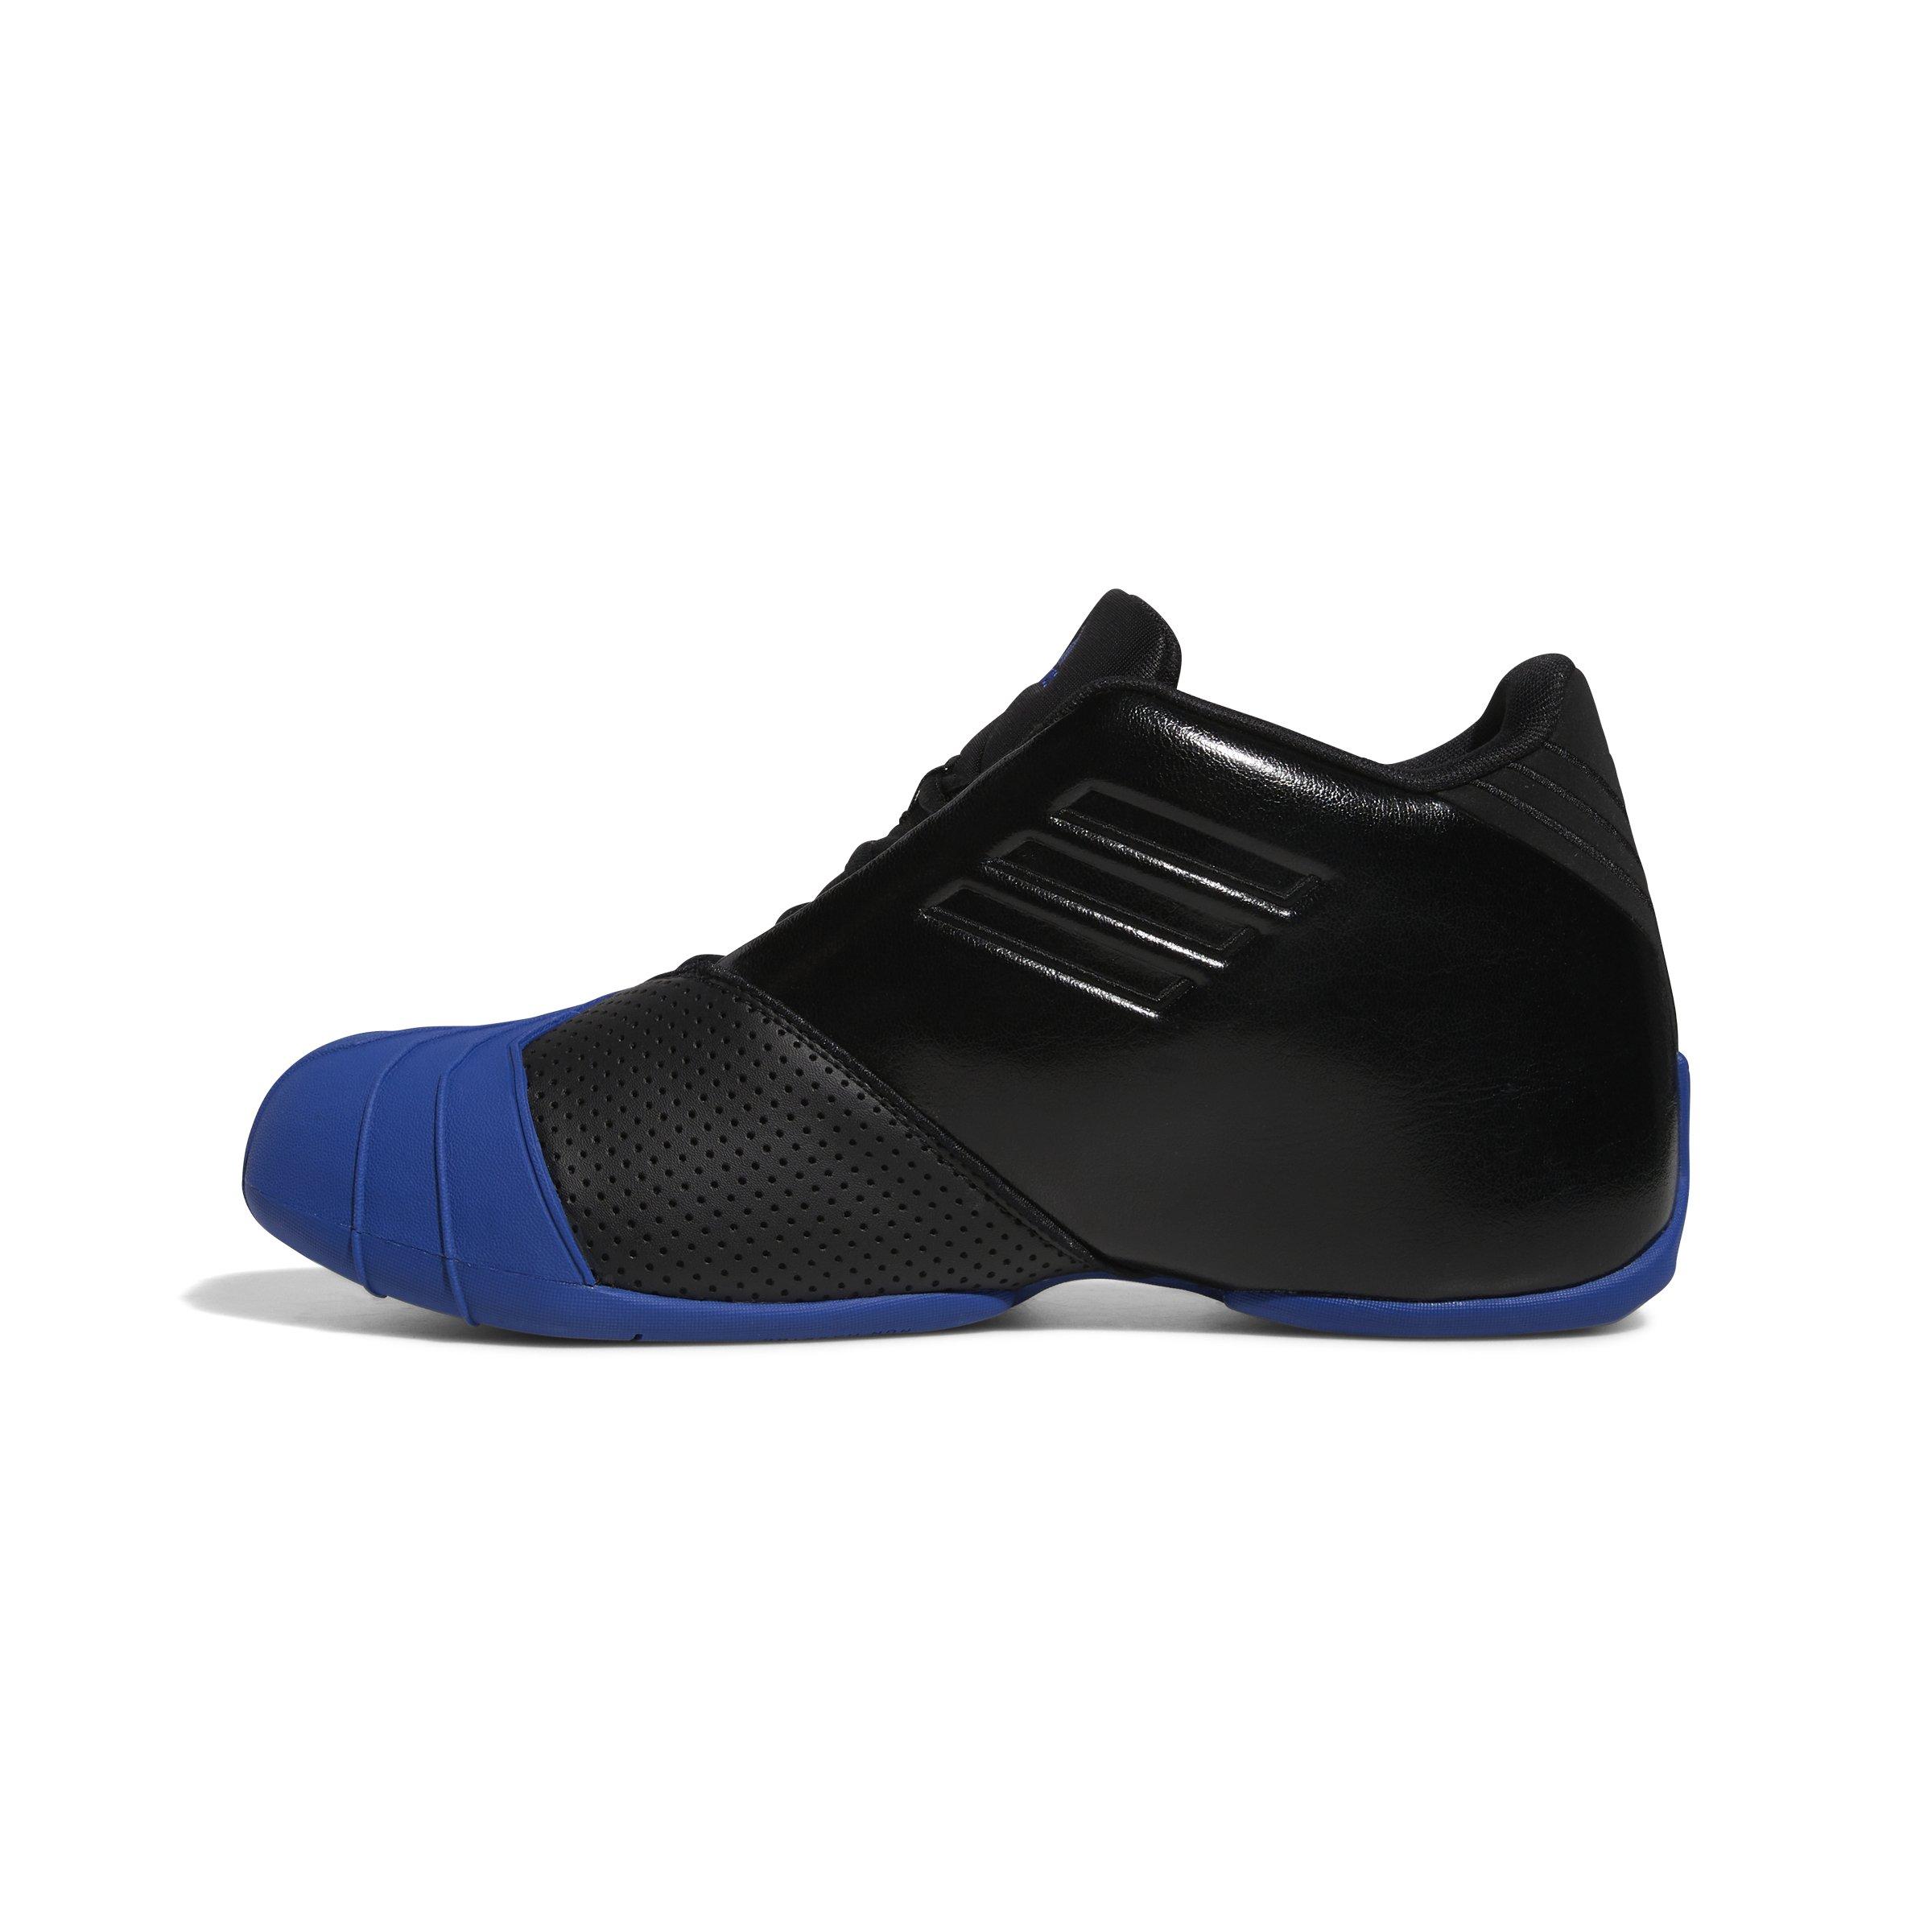 Saltar Oblea Ponte de pie en su lugar adidas T-Mac 1 "Core Black/Royal Blue/Core Black" Men's Basketball Shoe